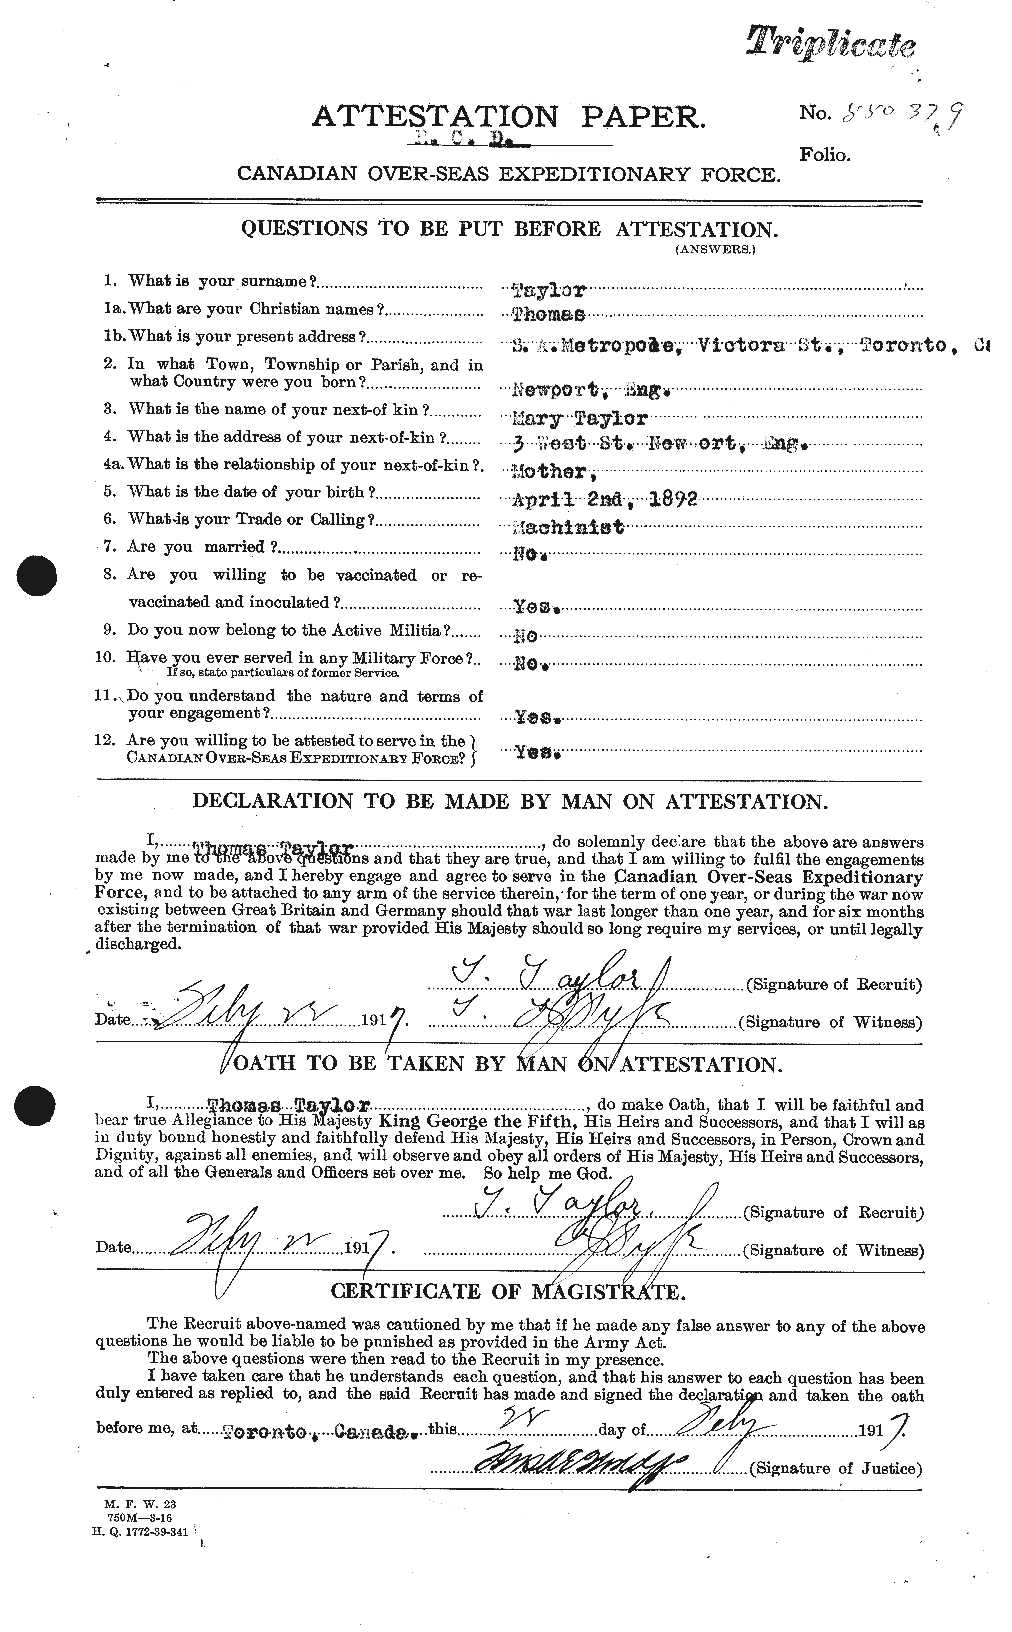 Dossiers du Personnel de la Première Guerre mondiale - CEC 627943a